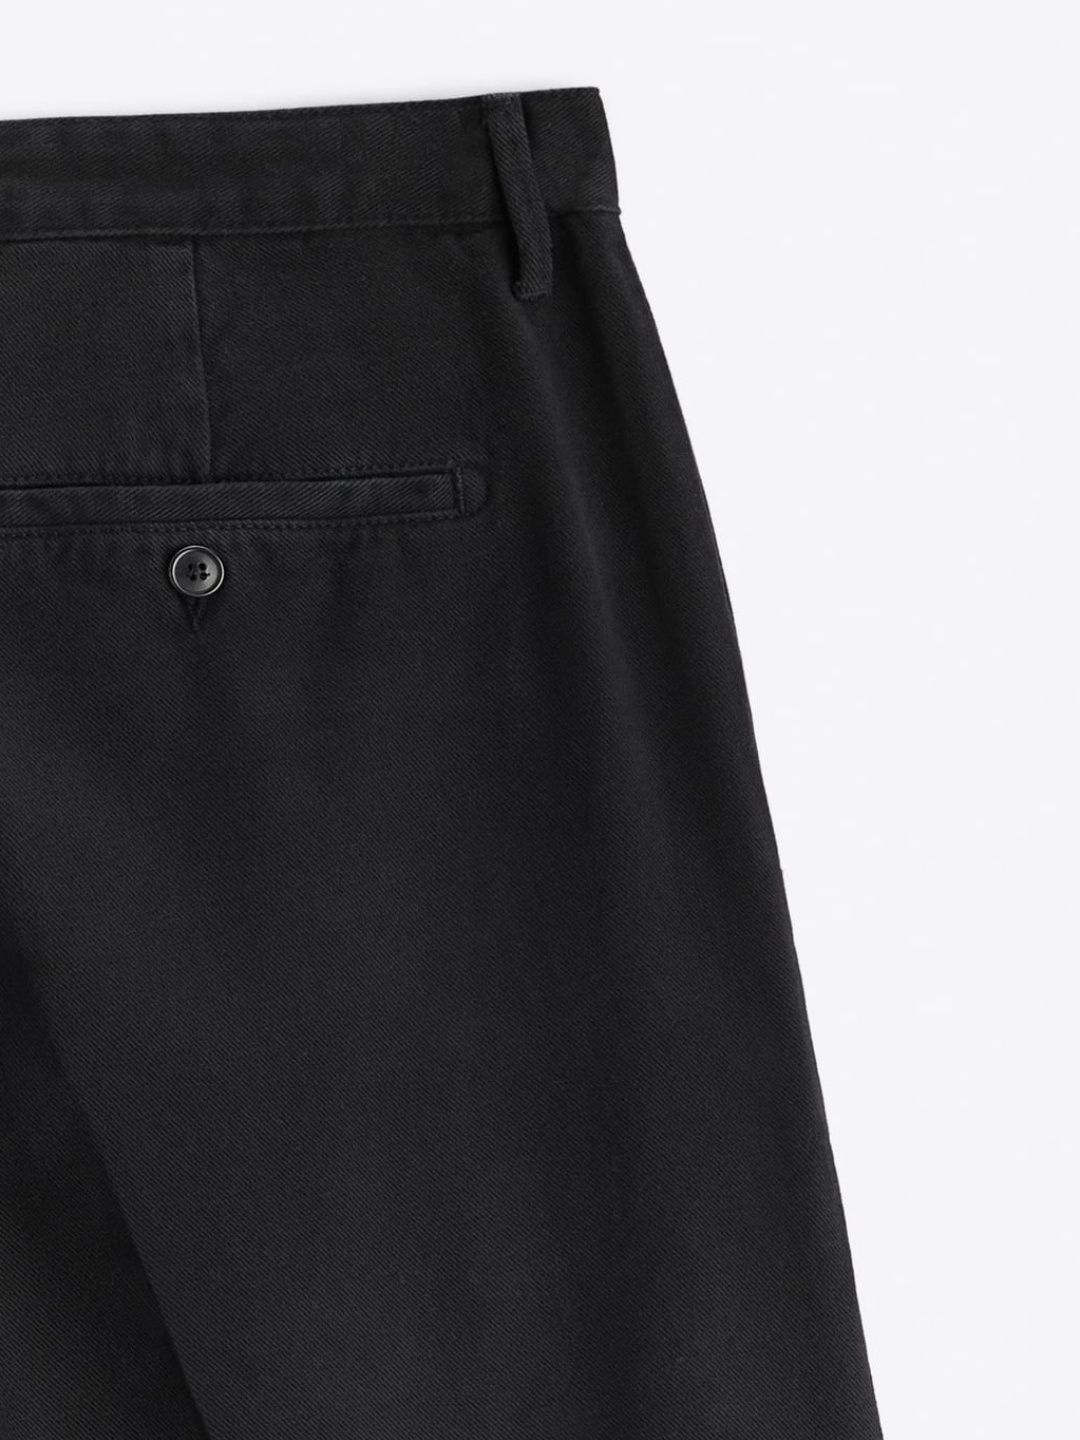 Spodnie męskie z zaszewkami i mankietami przy nogawce | Zara | EUR42